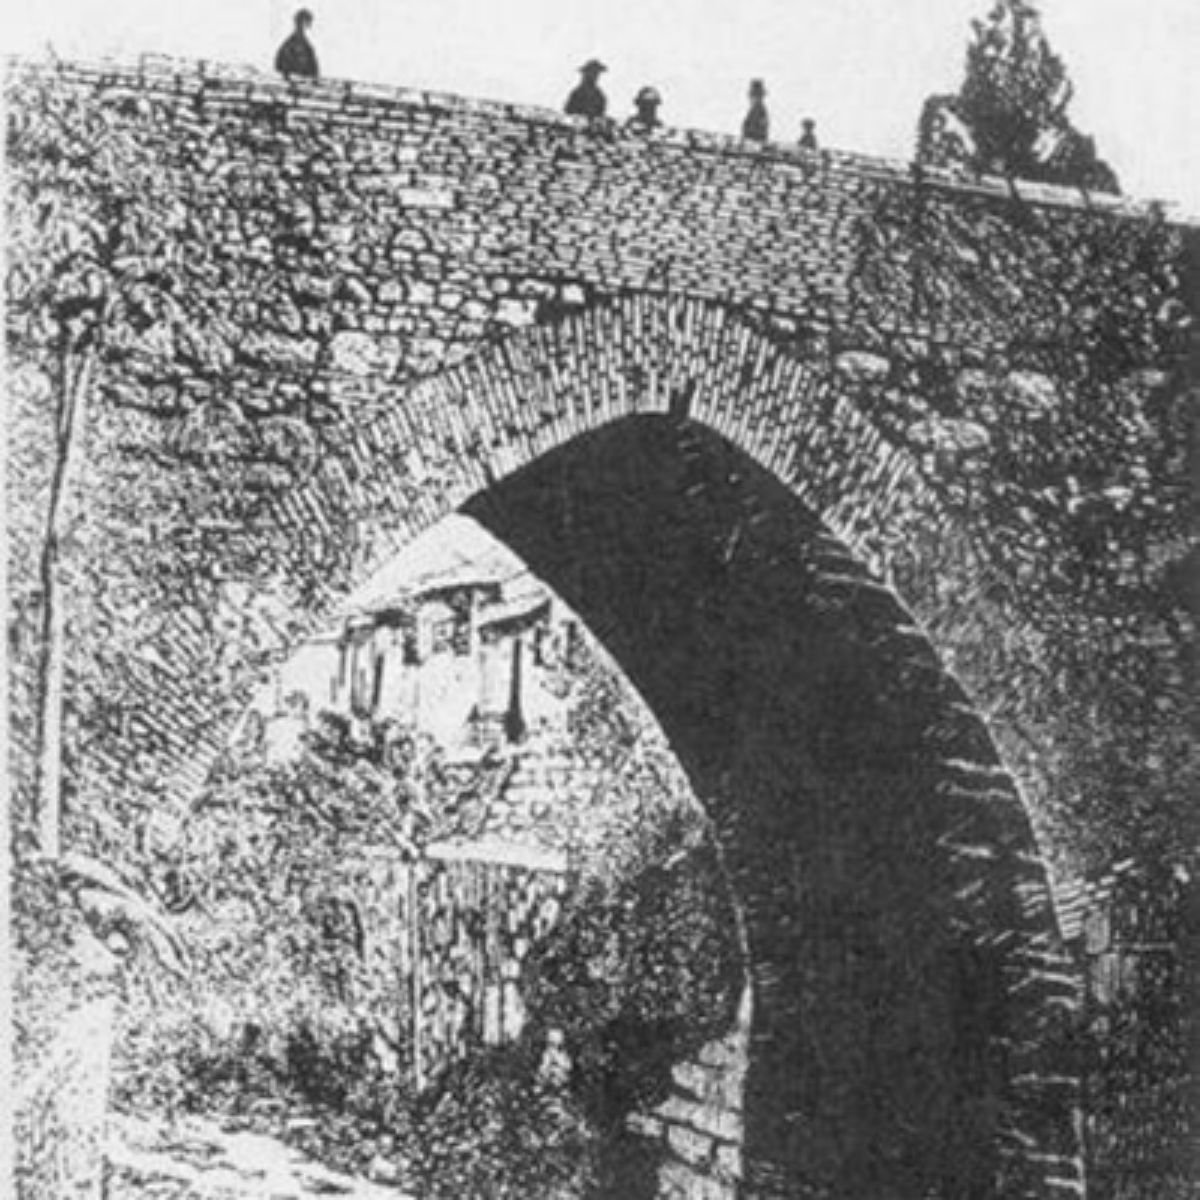 Acueducto de Bogotá año 1700 - La historia del embalse La Regadera, la primera hazaña de ingeniería que le suministró agua a Bogotá